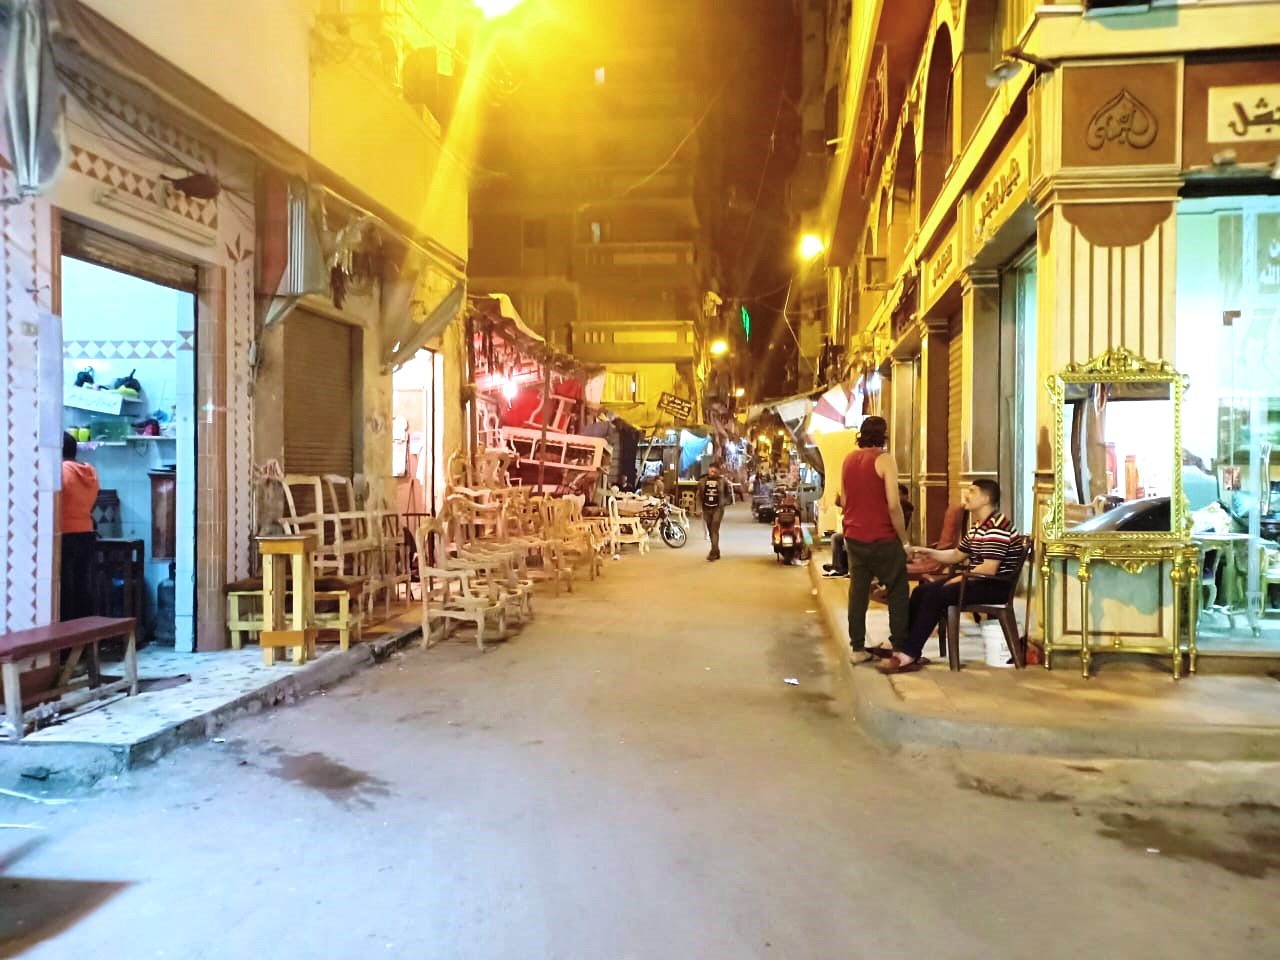 سوق الترك بالاسكندريه مدينة دمياط الثانيه (5)